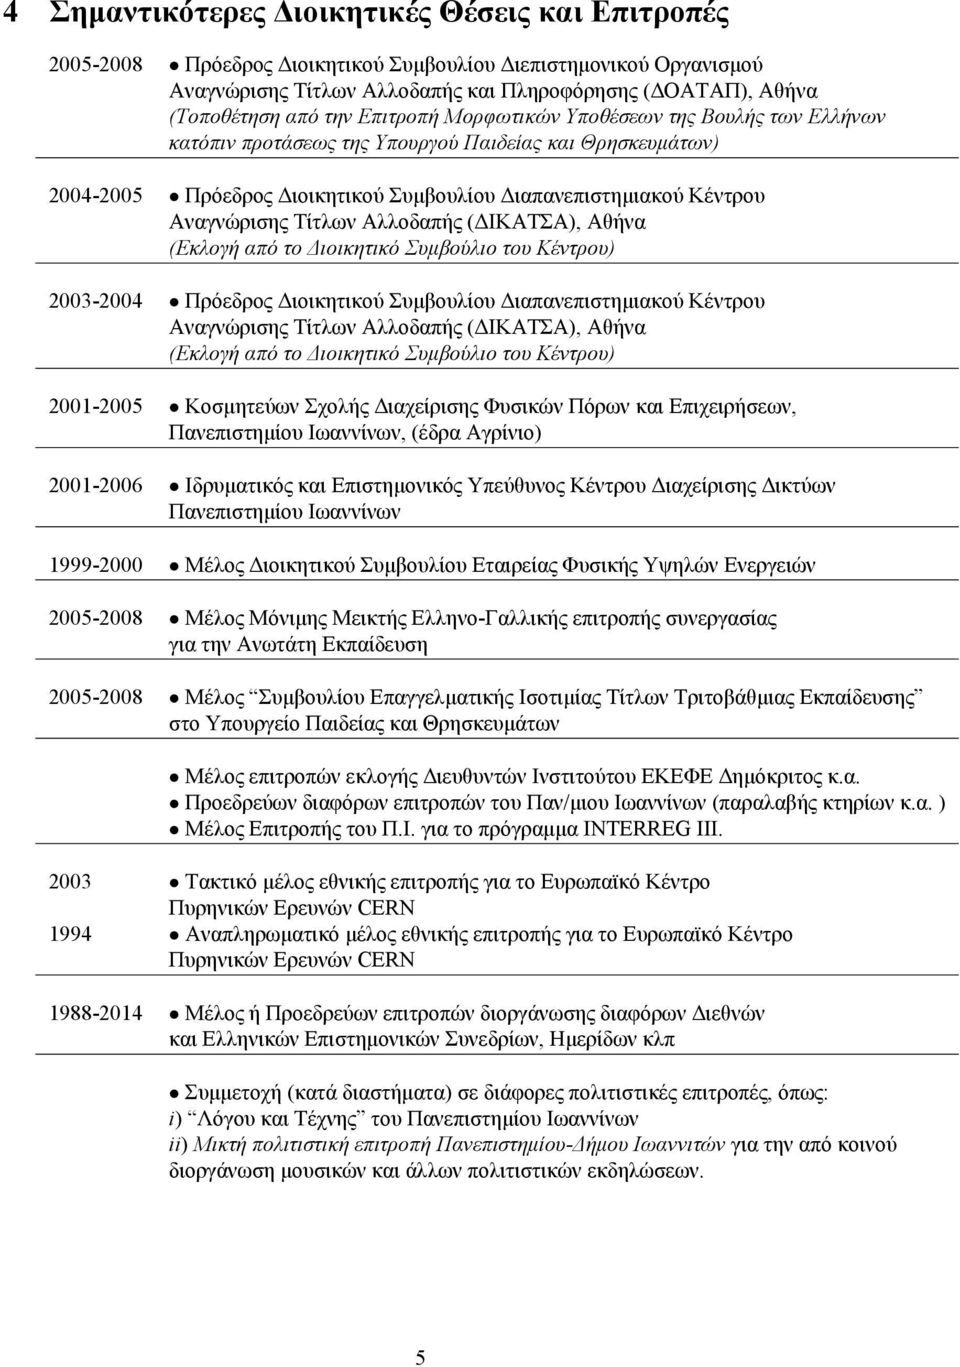 Τίτλων Αλλοδαπής (ΔΙΚΑΤΣΑ), Αθήνα (Εκλογή από το Διοικητικό Συμβούλιο του Κέντρου) 2003-2004 Πρόεδρος Διοικητικού Συμβουλίου Διαπανεπιστημιακού Κέντρου Αναγνώρισης Τίτλων Αλλοδαπής (ΔΙΚΑΤΣΑ), Αθήνα